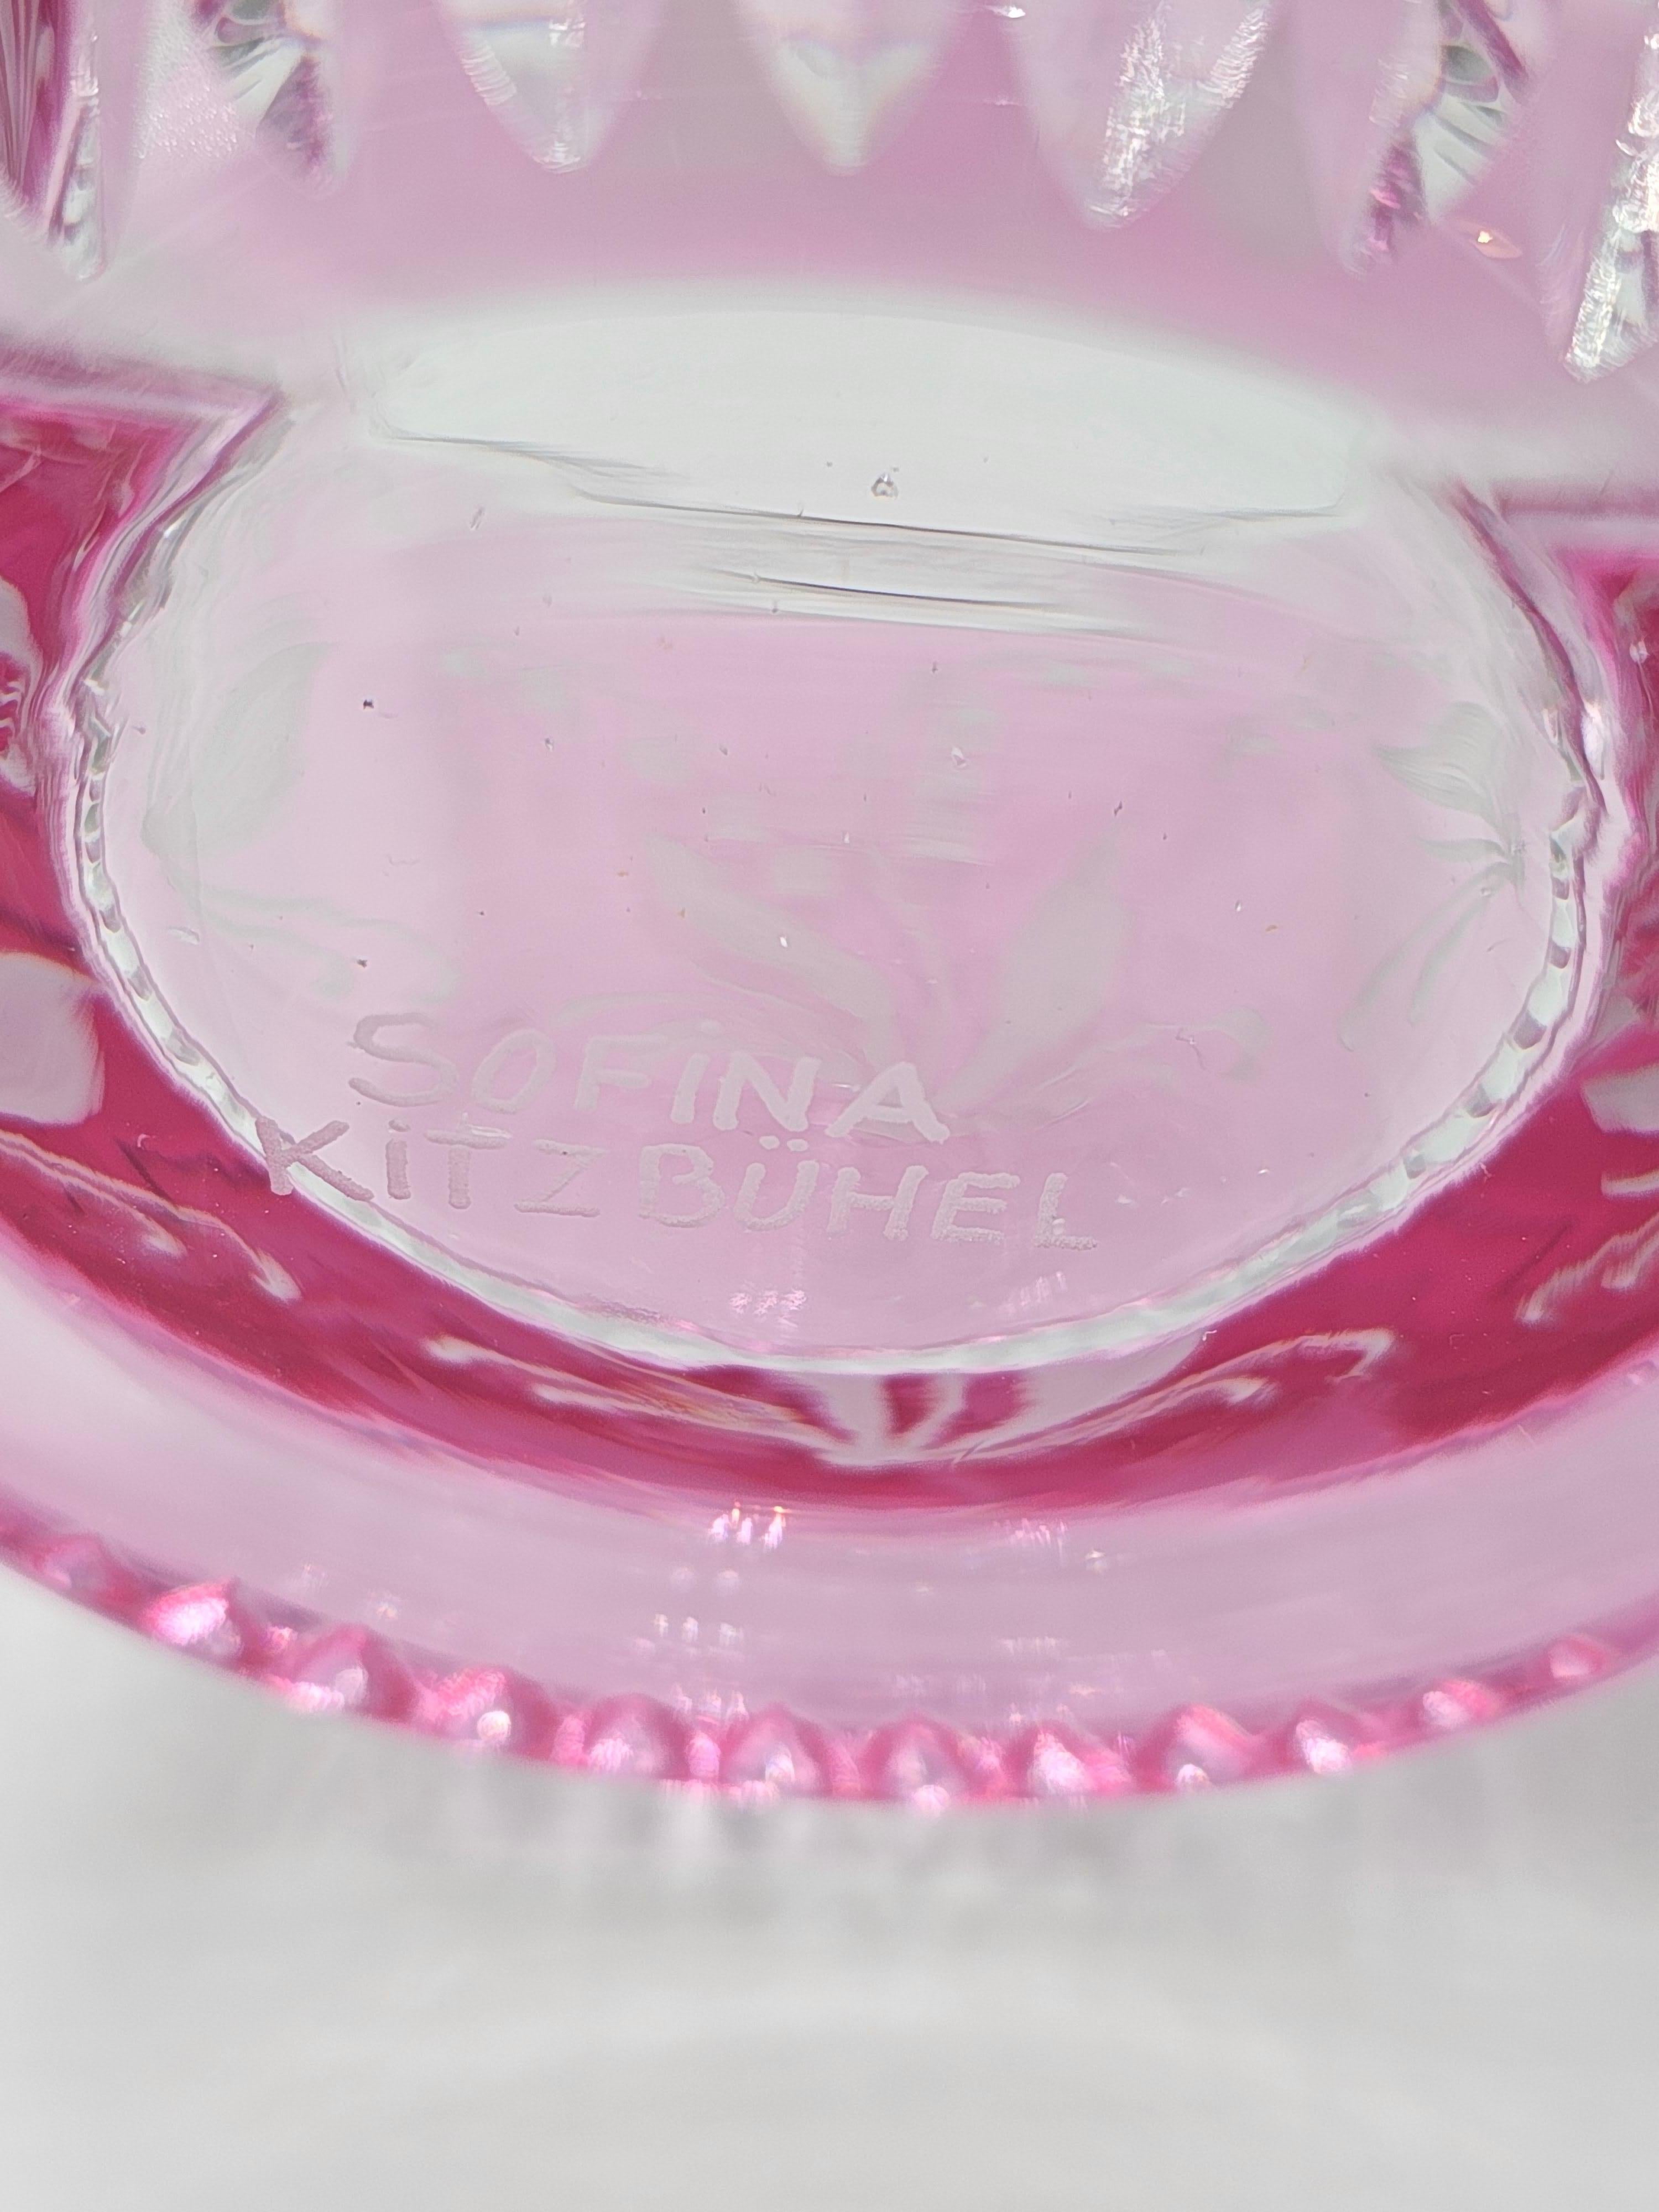 Handgeblasene Kristallvase/Laterne aus rosafarbenem Glas mit Maiglöckchendekor rundherum. Das Dekor wird von Künstlern freihändig graviert und der Boden des Glases wird von Hand geschnitzt. Das hier gezeigte Glas in rosa Farbe kann auch in anderen